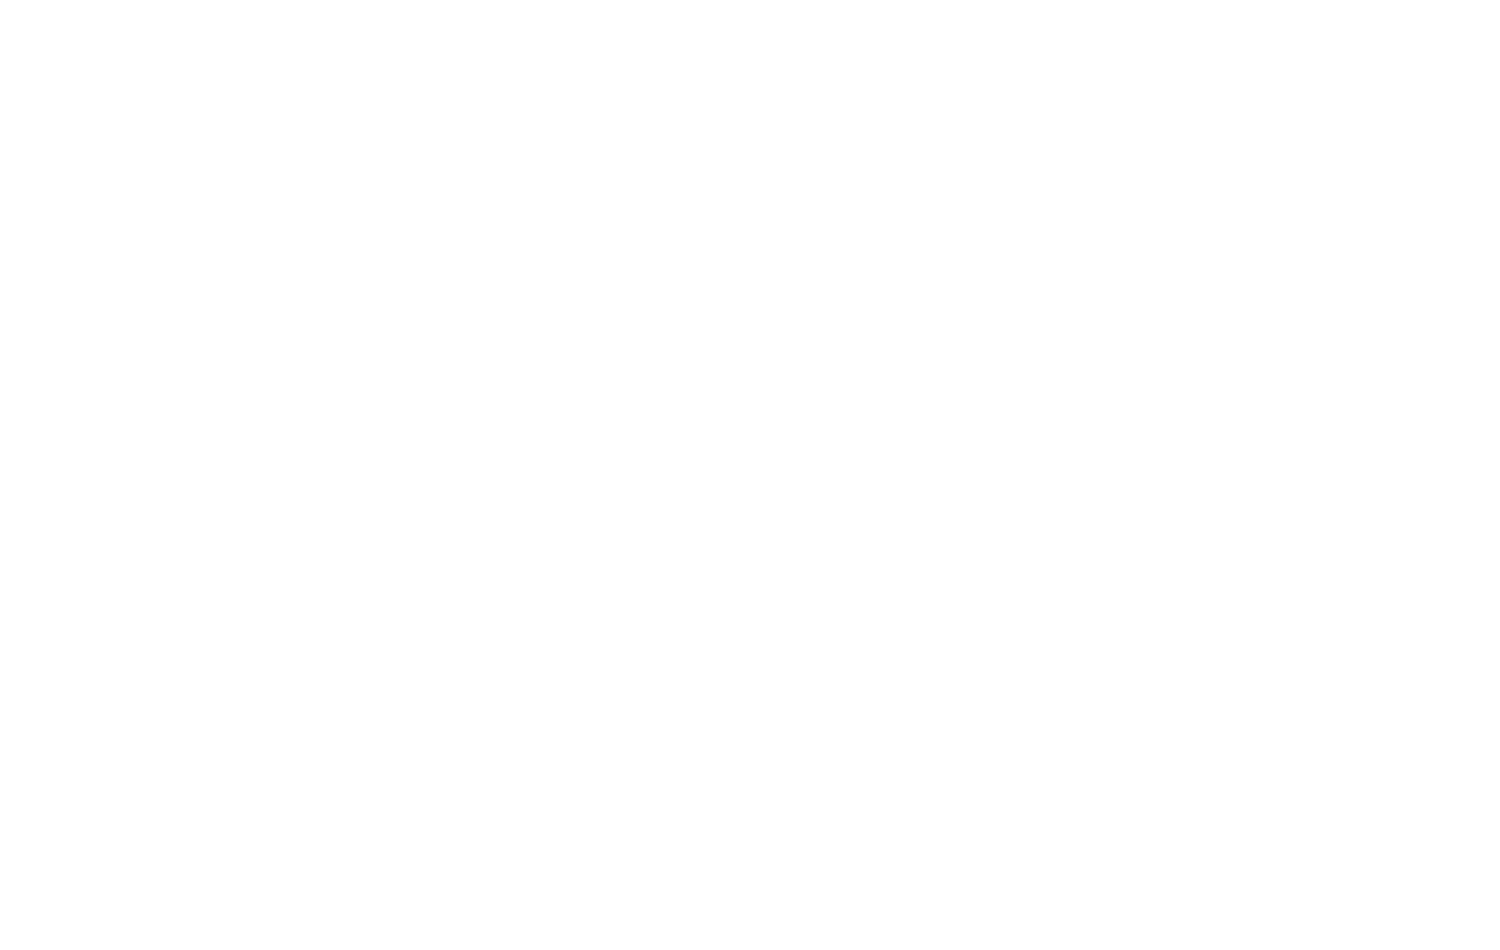 Illumination Holiday Lighting